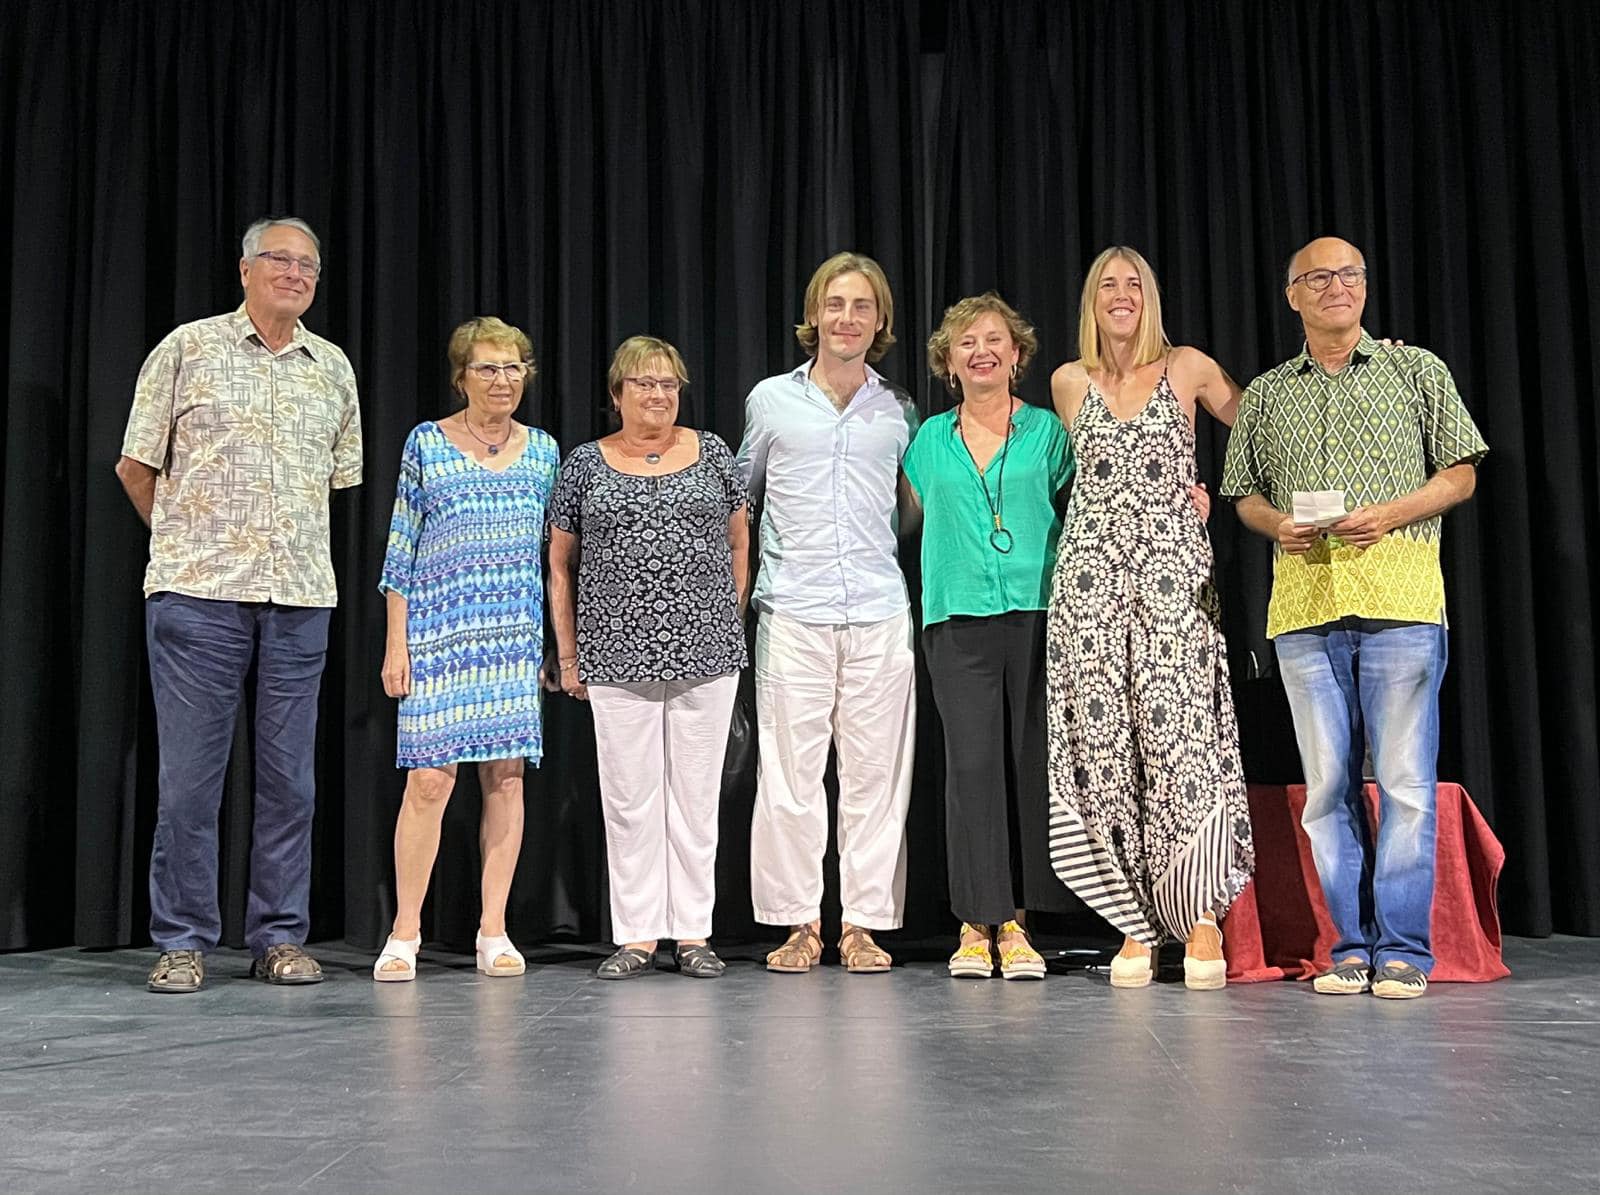 Premi per a Margalida Pons Jaume en reconeixement a la seva trajectòria literària